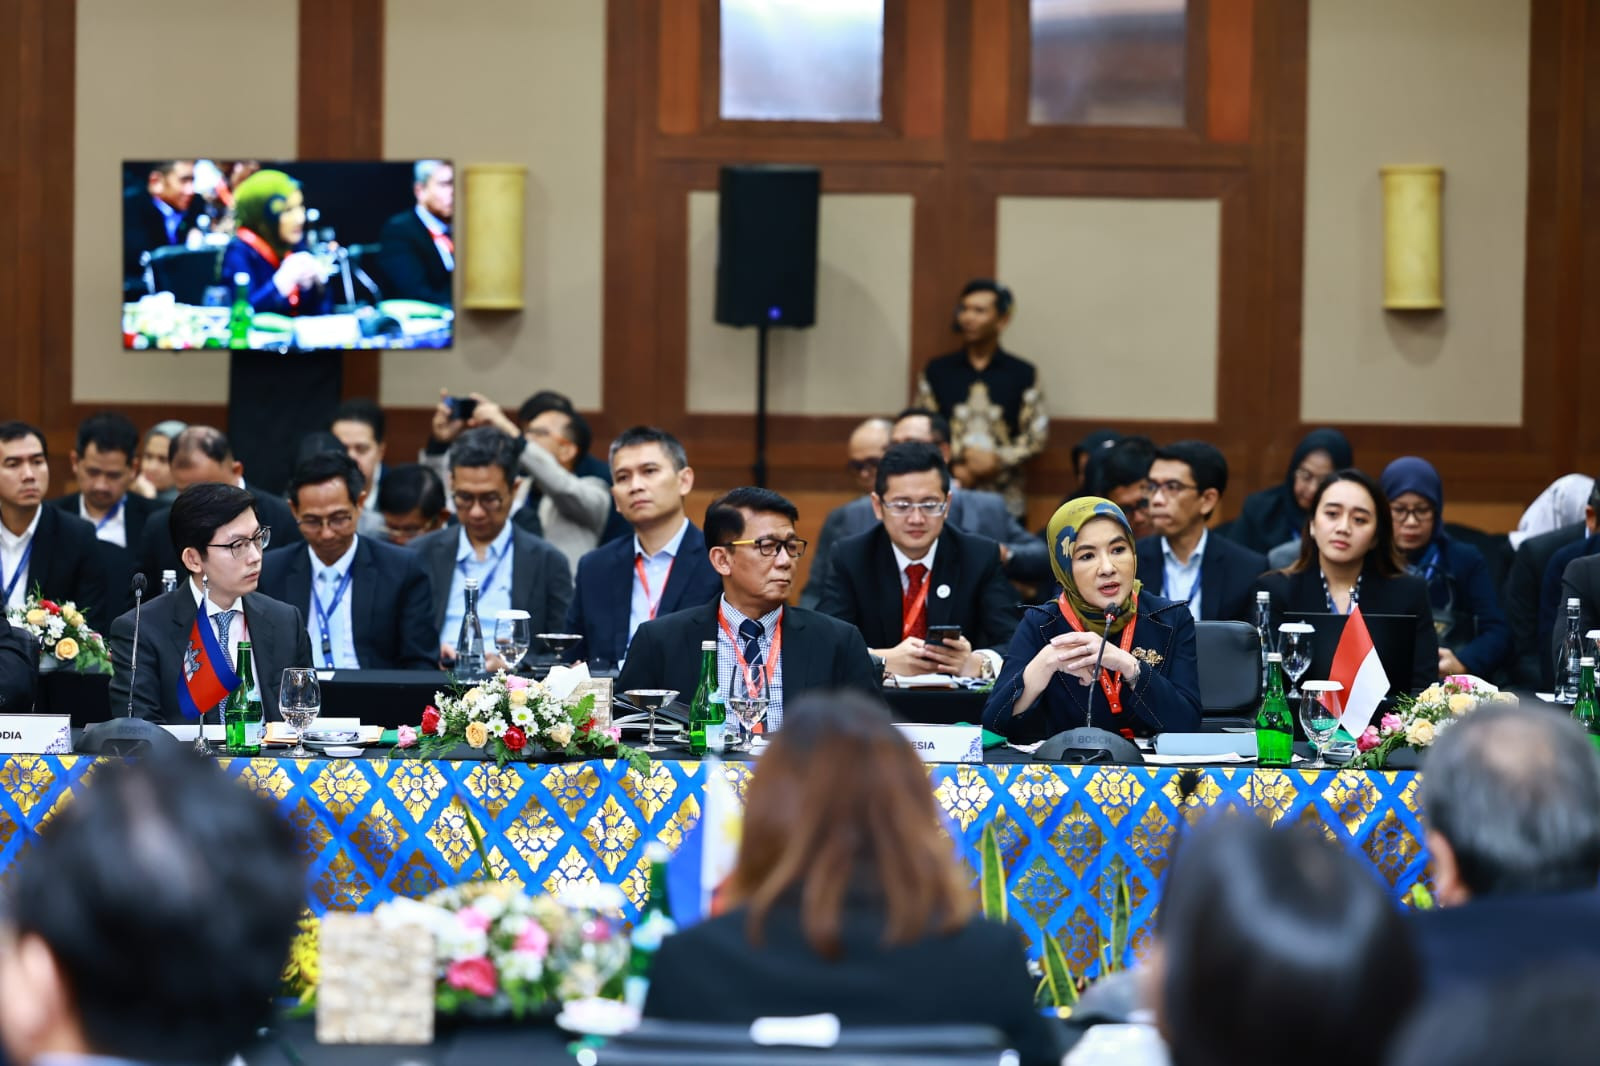 Dirut Pertamina Nicke Widyawati Sampaikan 2 Strategi untuk Capai Komunitas Ekonomi ASEAN